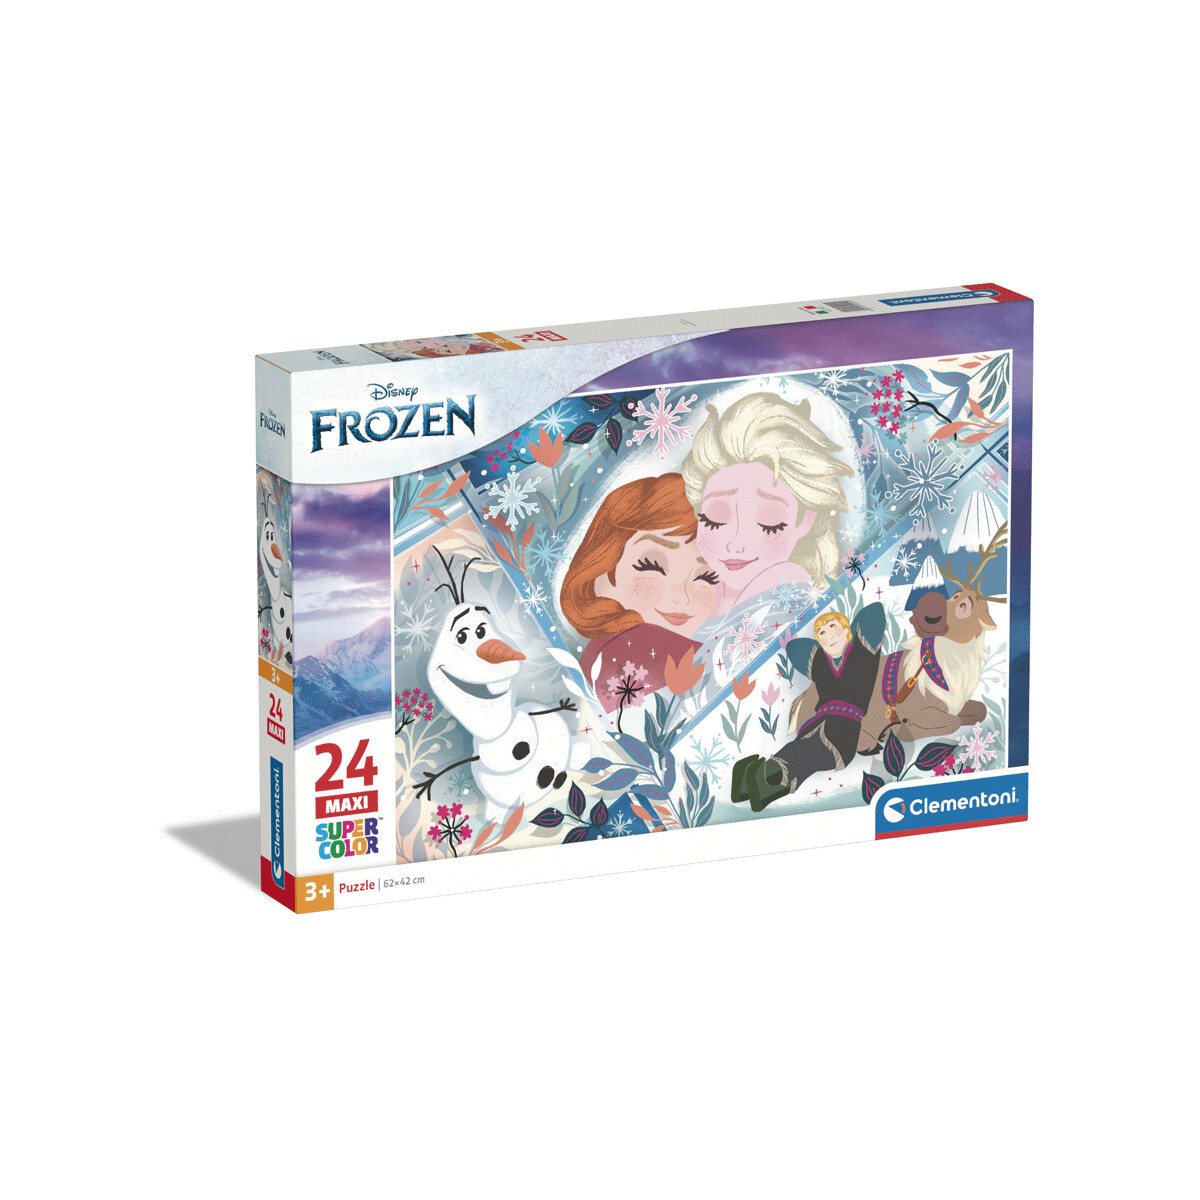 Clementoni - 24224 - puzzle 24 maxi frozen 2 - 62x42 cm - CLEMENTONI, DISNEY PRINCESS